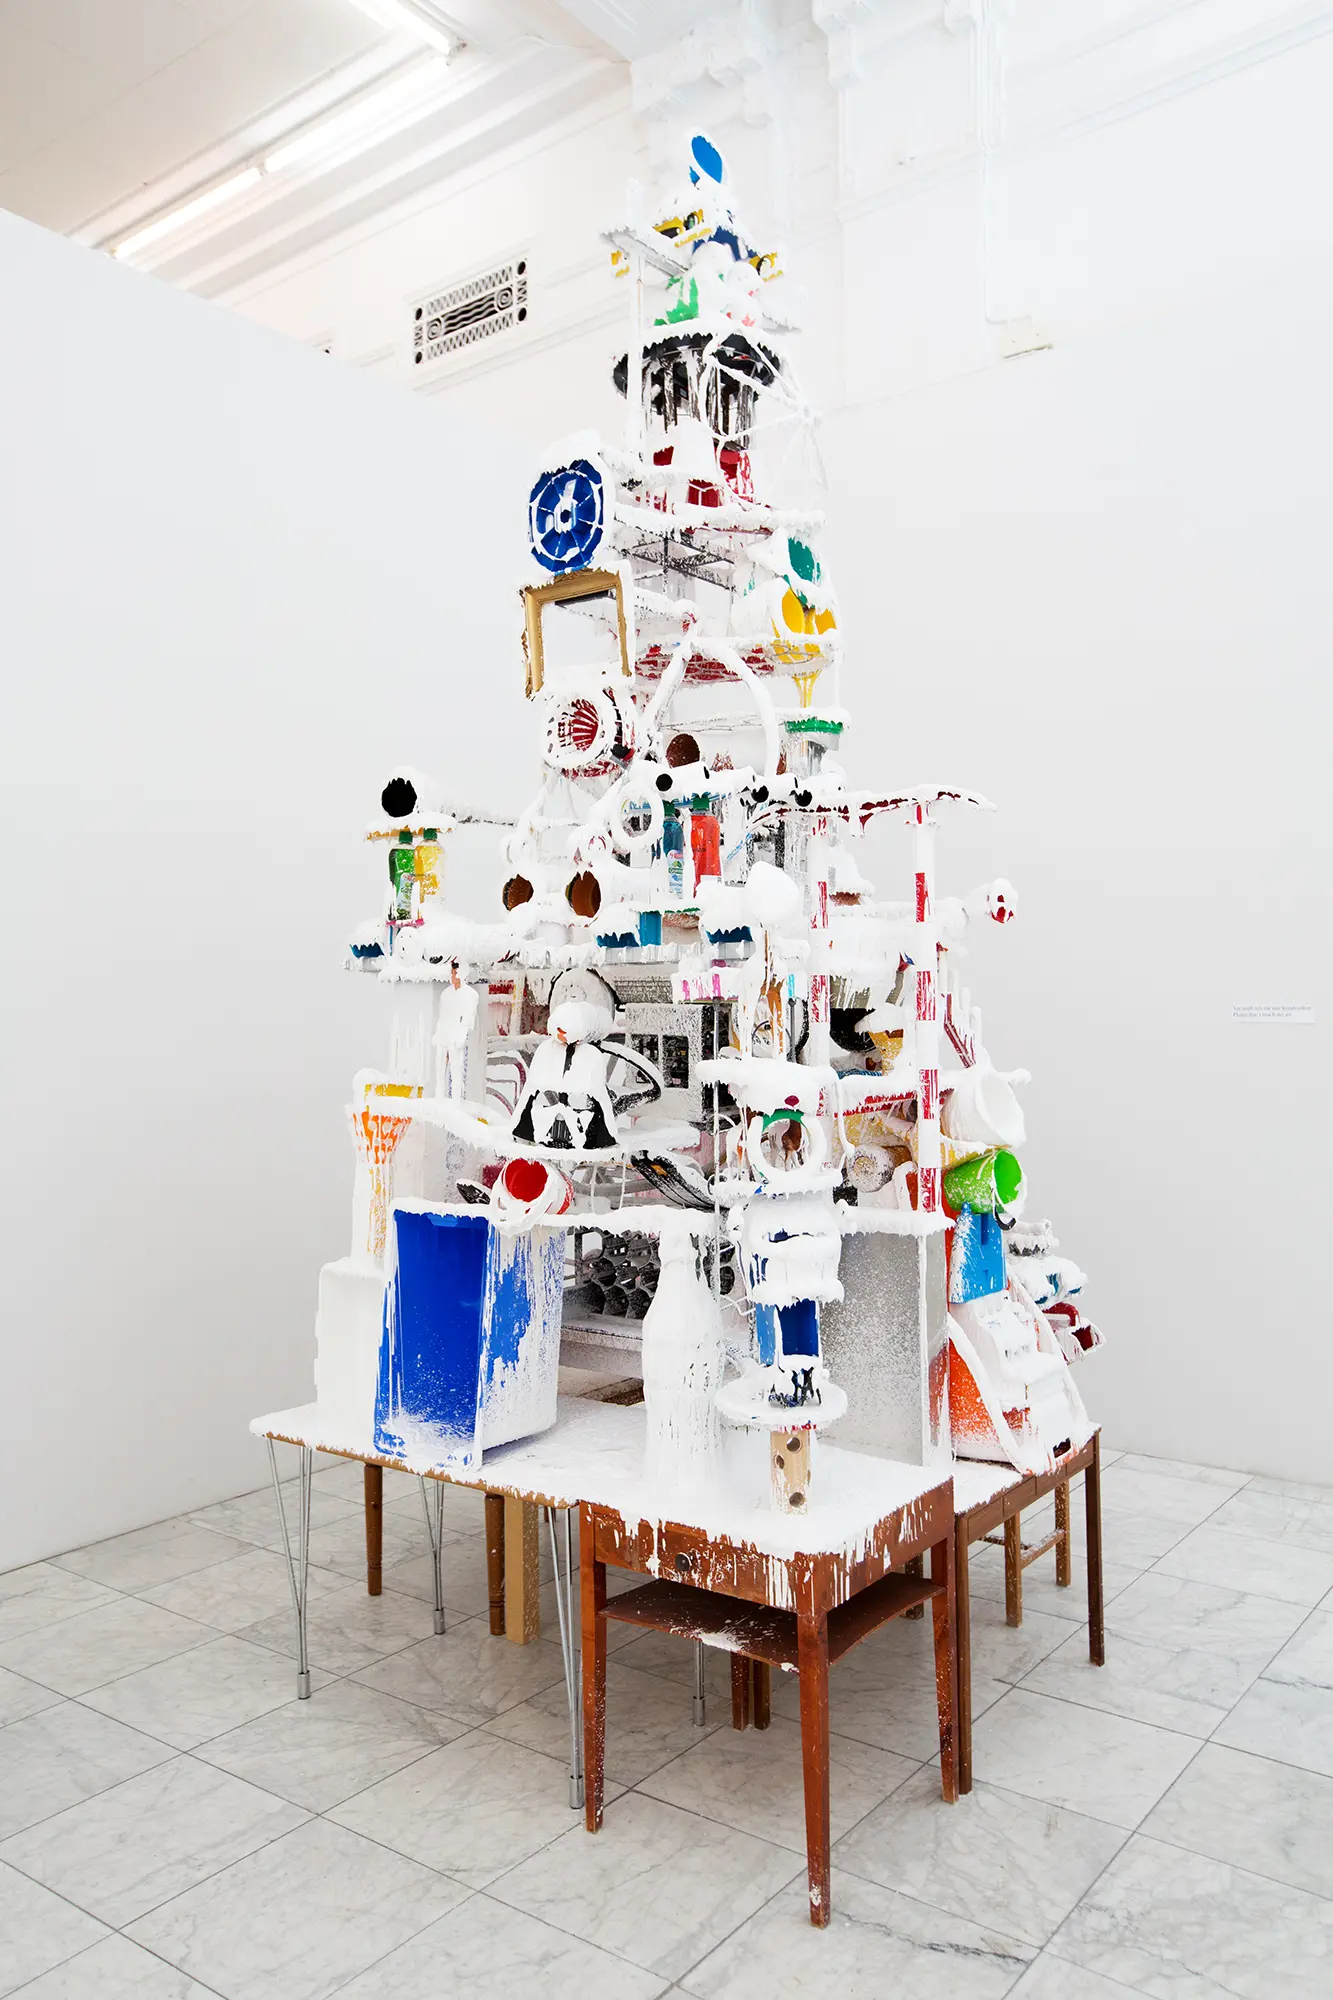 I ett vitt galleri står en skulptur uppbyggd av en mängd olika föremål staplade på varandra i en hög. Föremålen är till stor del täckta av en vit plastmassa. Bland föremålen syns plasthinkar, diskmedelsflaskor och en tavelram. Föremålen står på flera mindre träbord. 